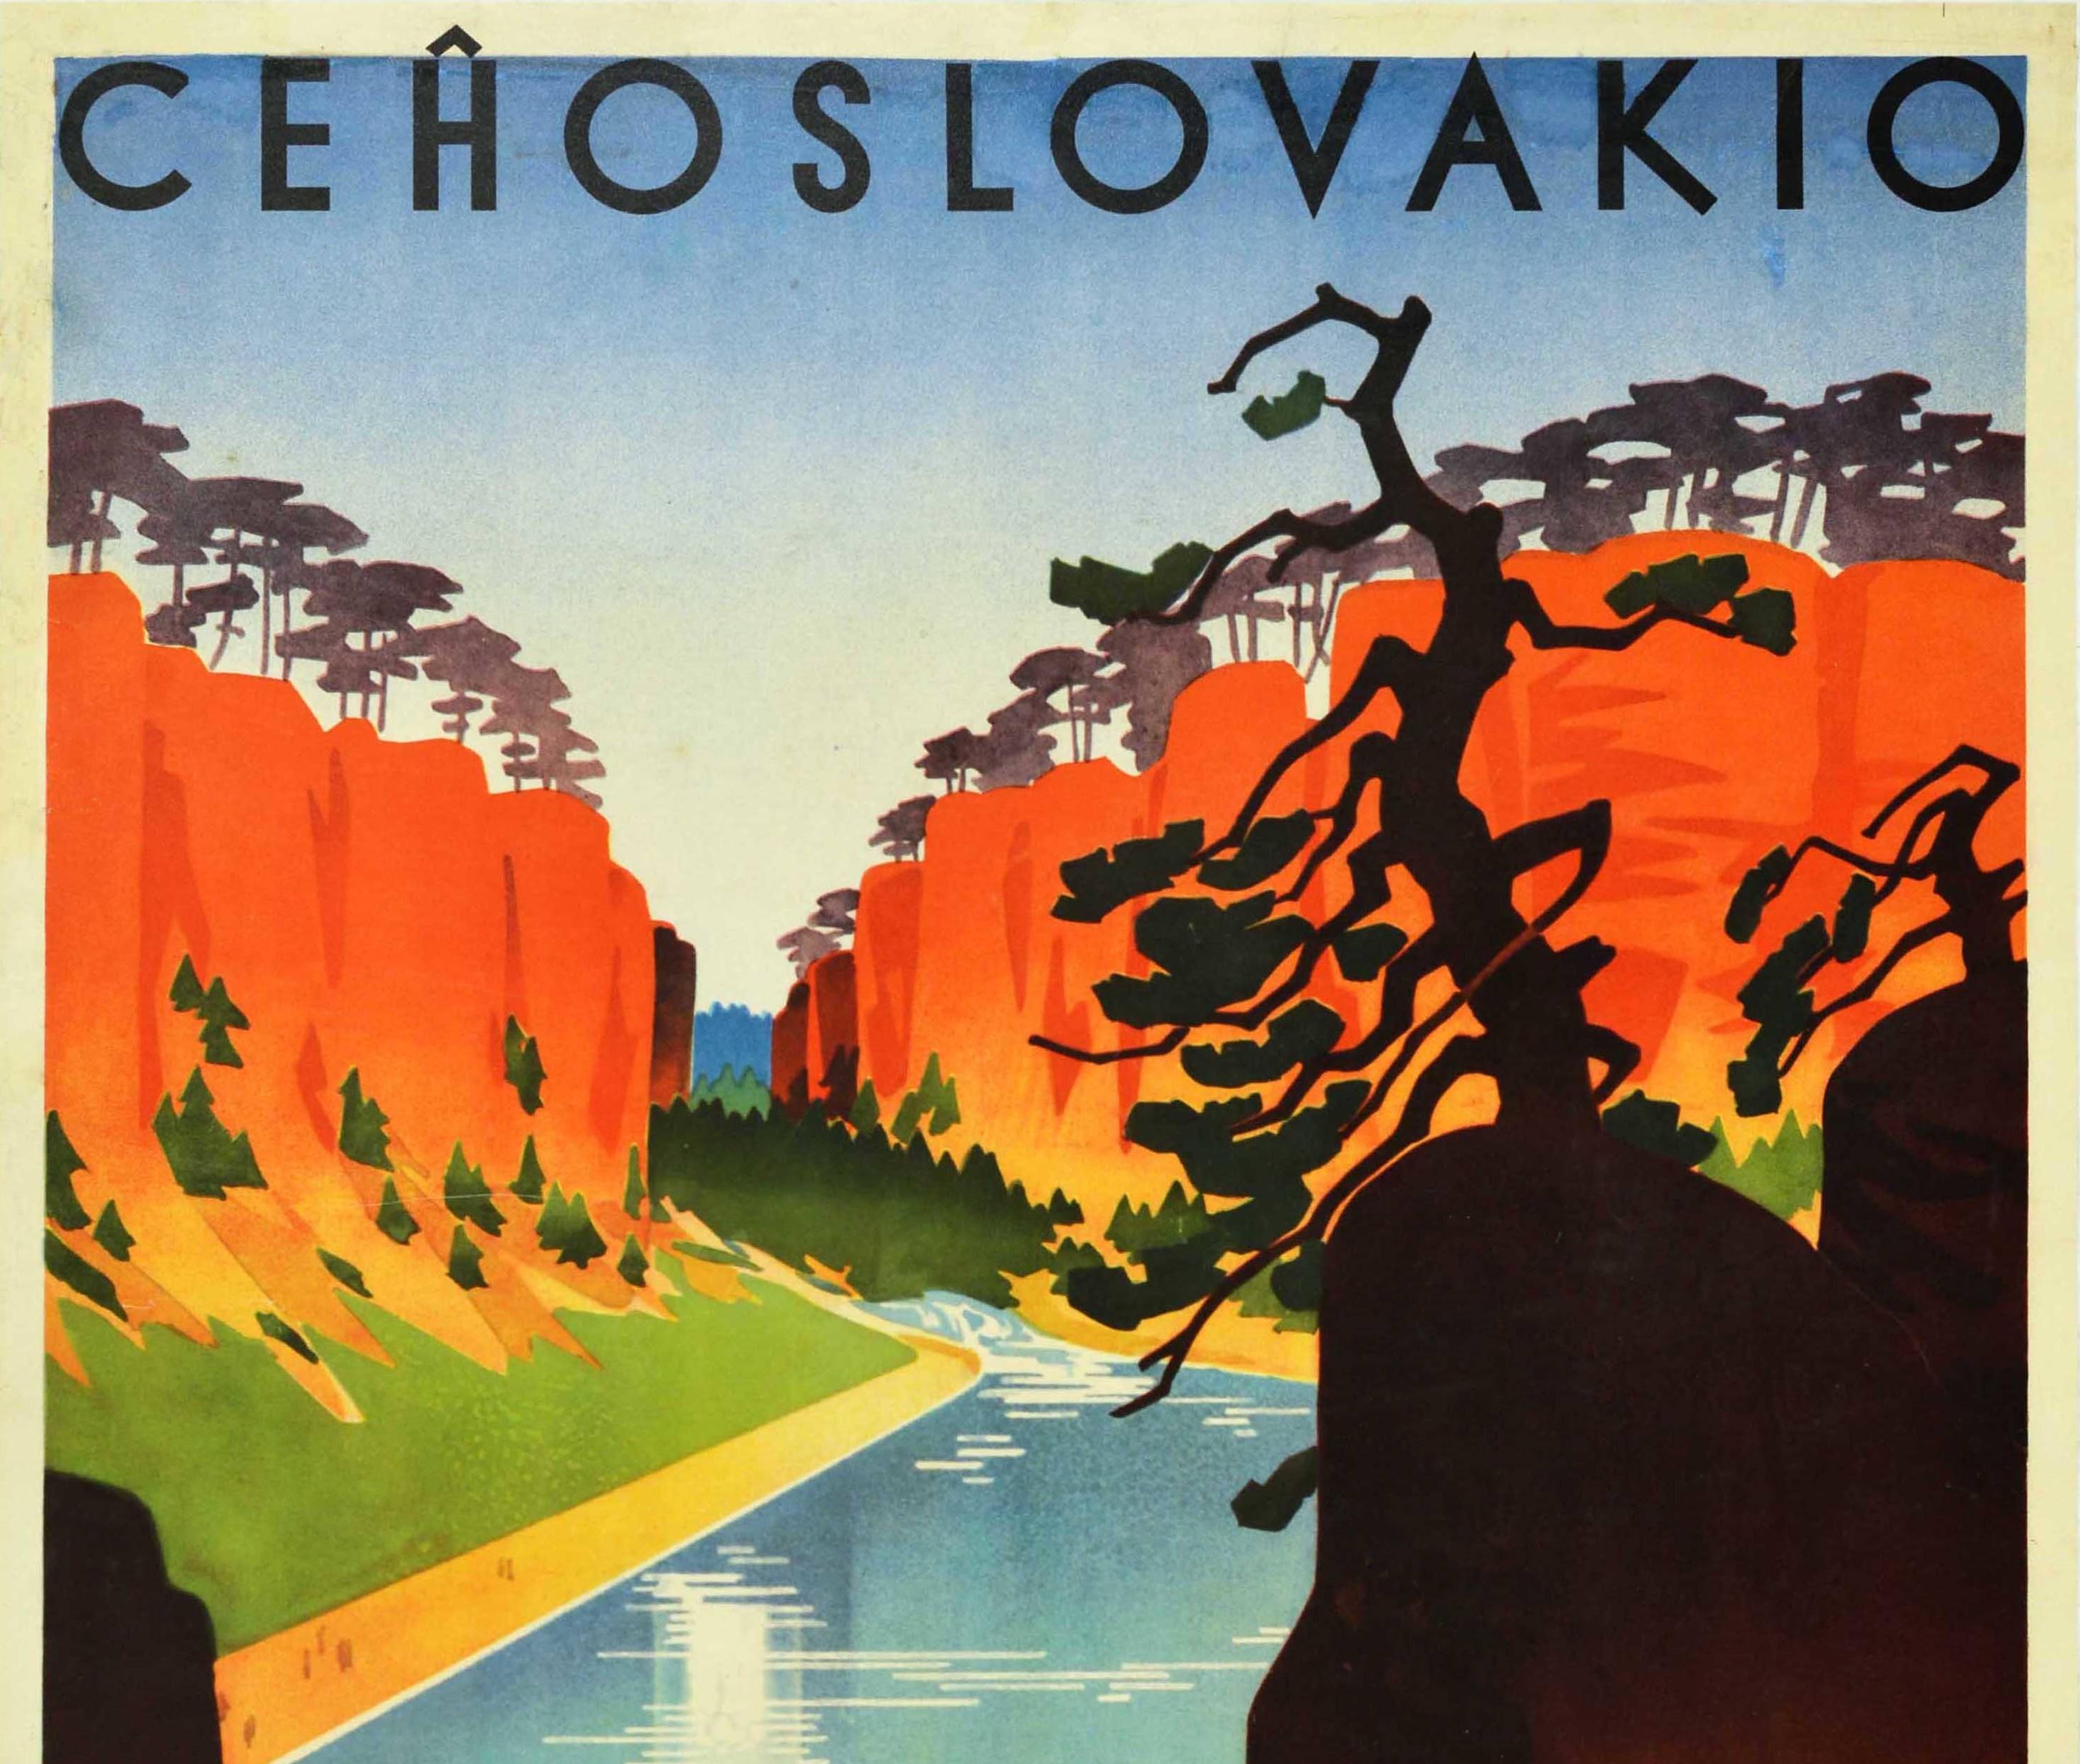 Original Vintage-Reiseplakat der Tschechoslowakischen Staatsbahn für Jicin und die Prachov-Felsen / Rockaro de Prachov mit einem atemberaubenden Bild von Menschen und rot-weiß gestreiften Sonnenschirmen an einem Sandstrand am ruhigen Wasser, in dem